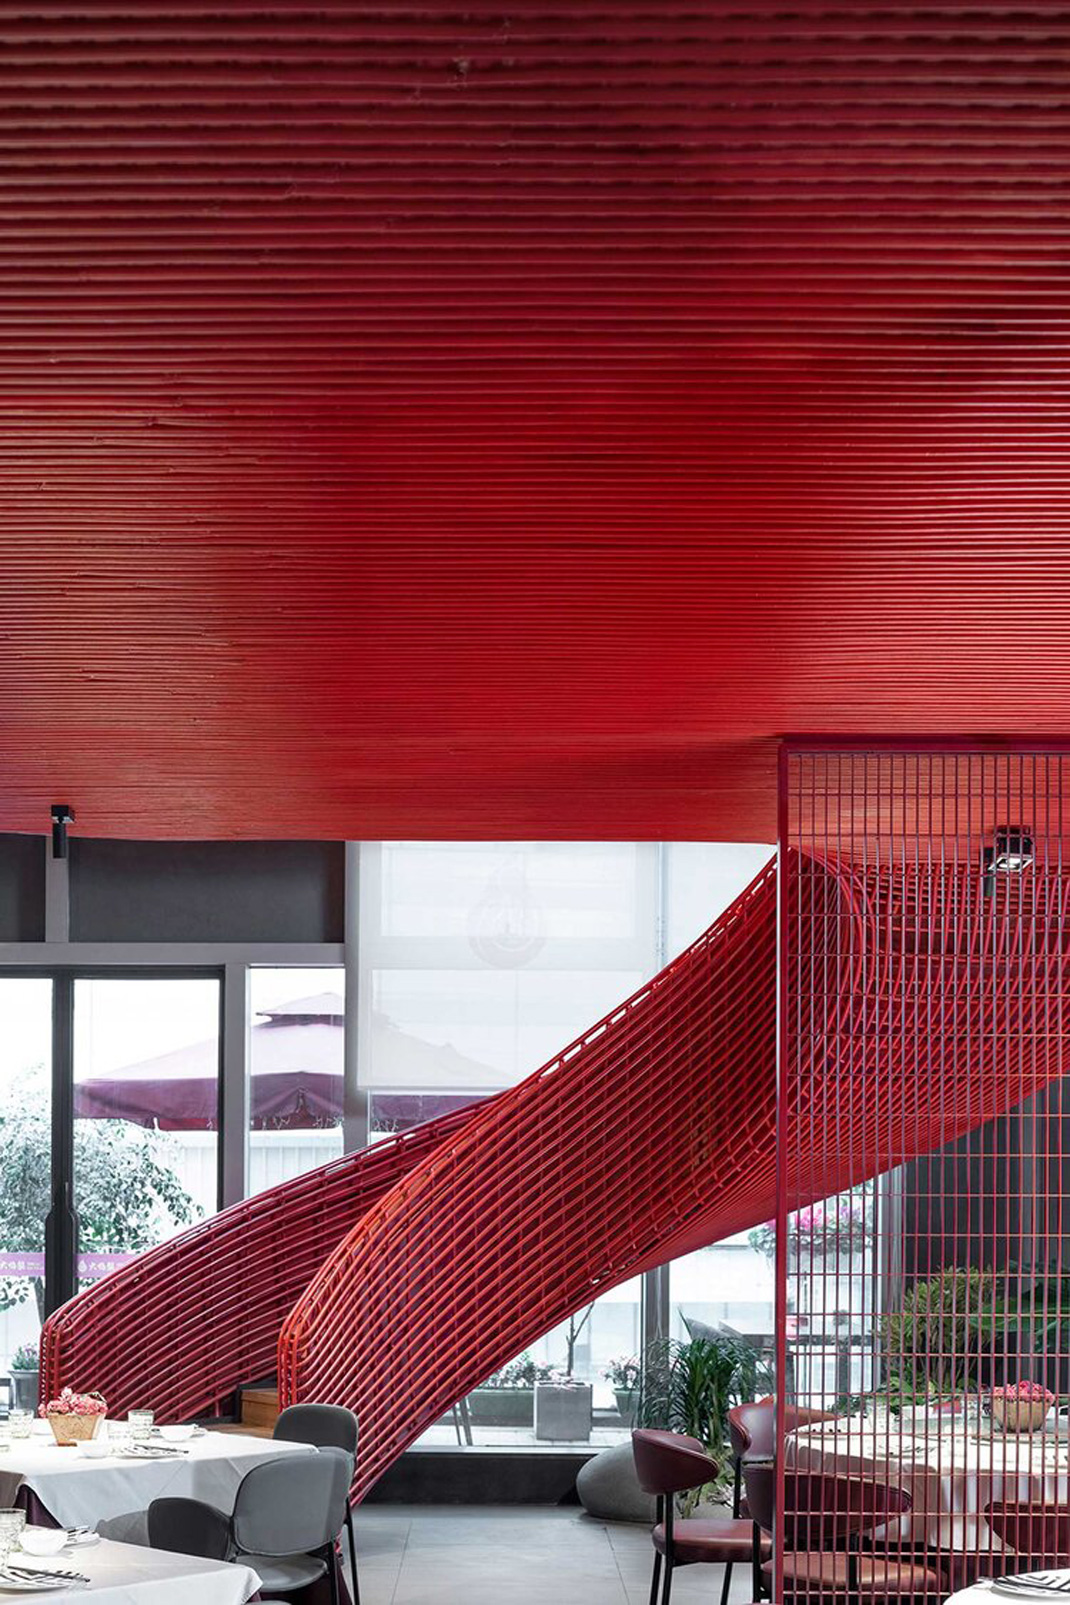 大亚丽餐厅成都 成都 四川 音乐公园 红色 logo设计 vi设计 空间设计 视觉餐饮